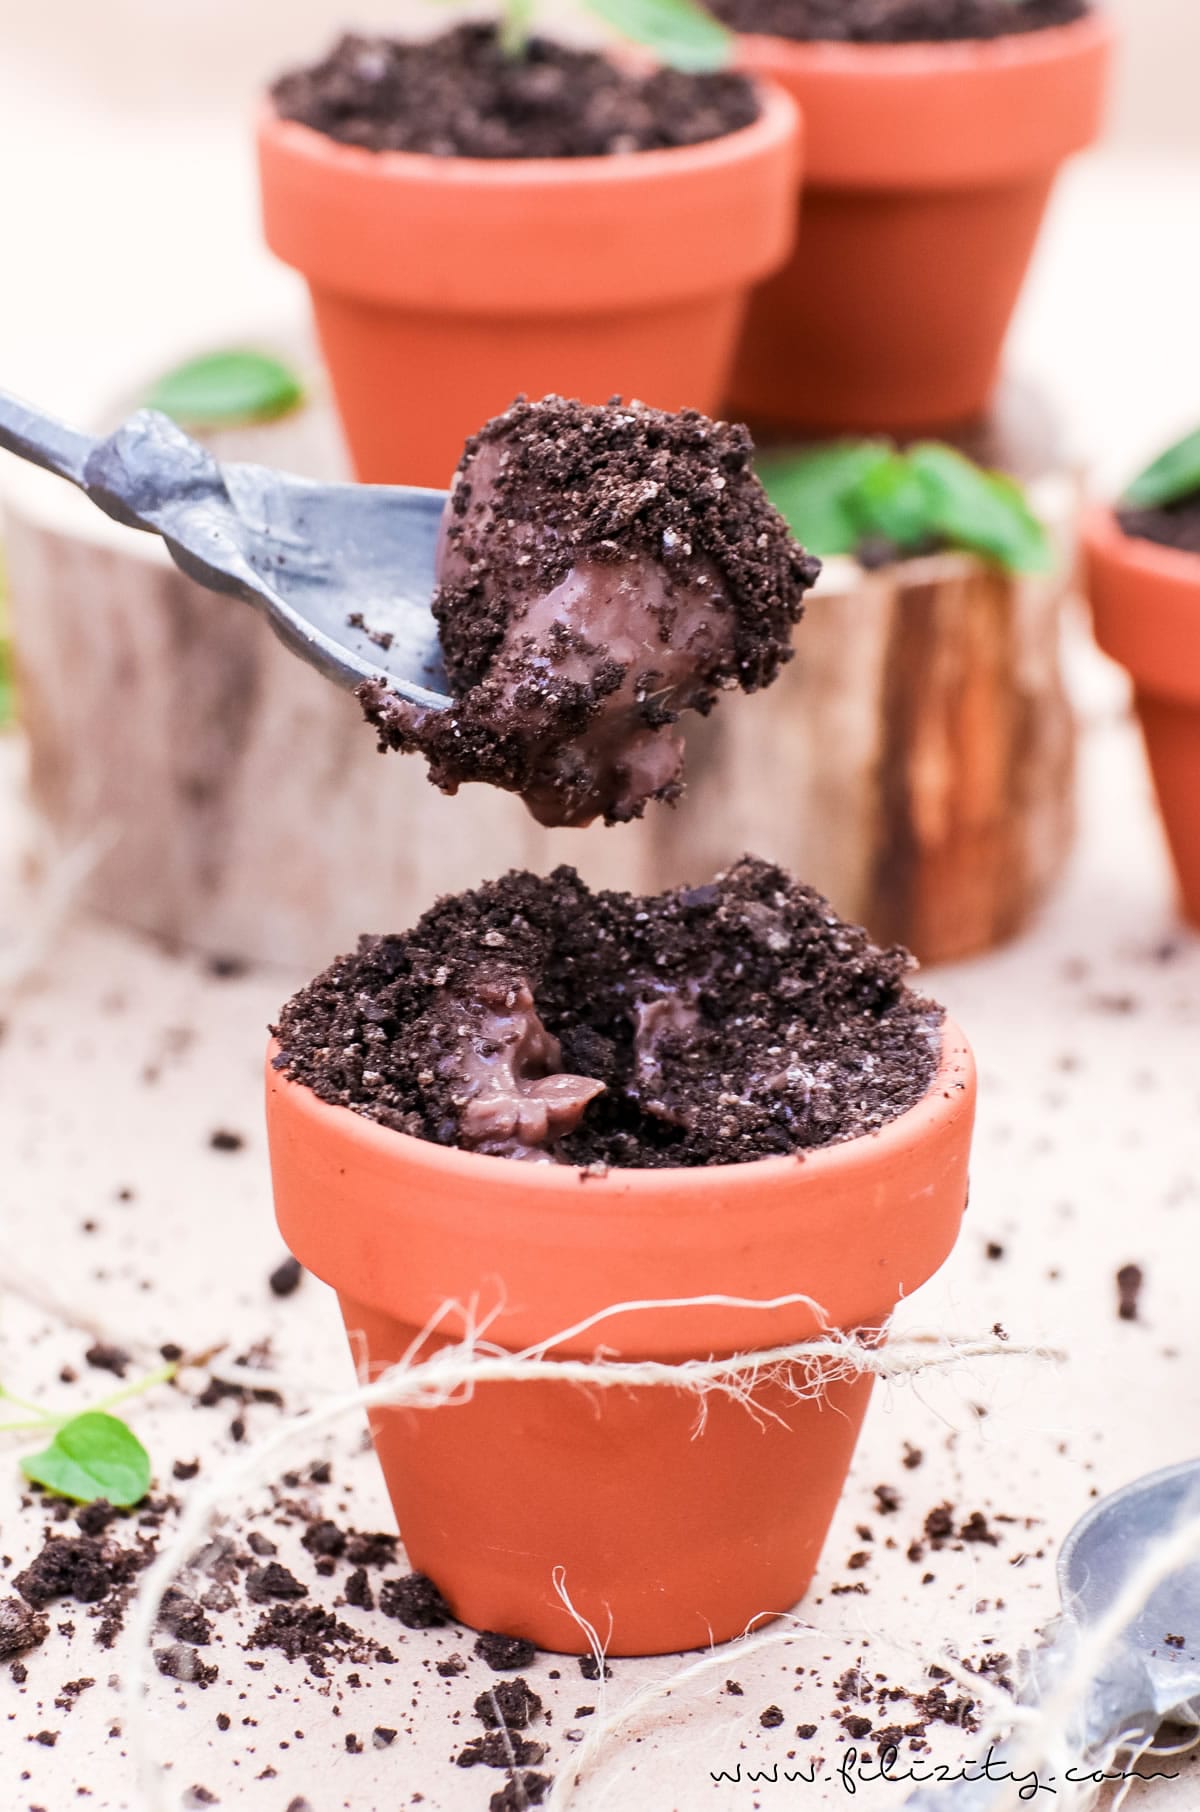 Oreo Dirt Pudding - Schoko-Pudding im Blumentopf mit Kekskrümeln und Kräutern | Perfekt als Dessert und Party-Food für Geburtstage & Co. | Filizity.com | Food-Blog aus dem Rheinland